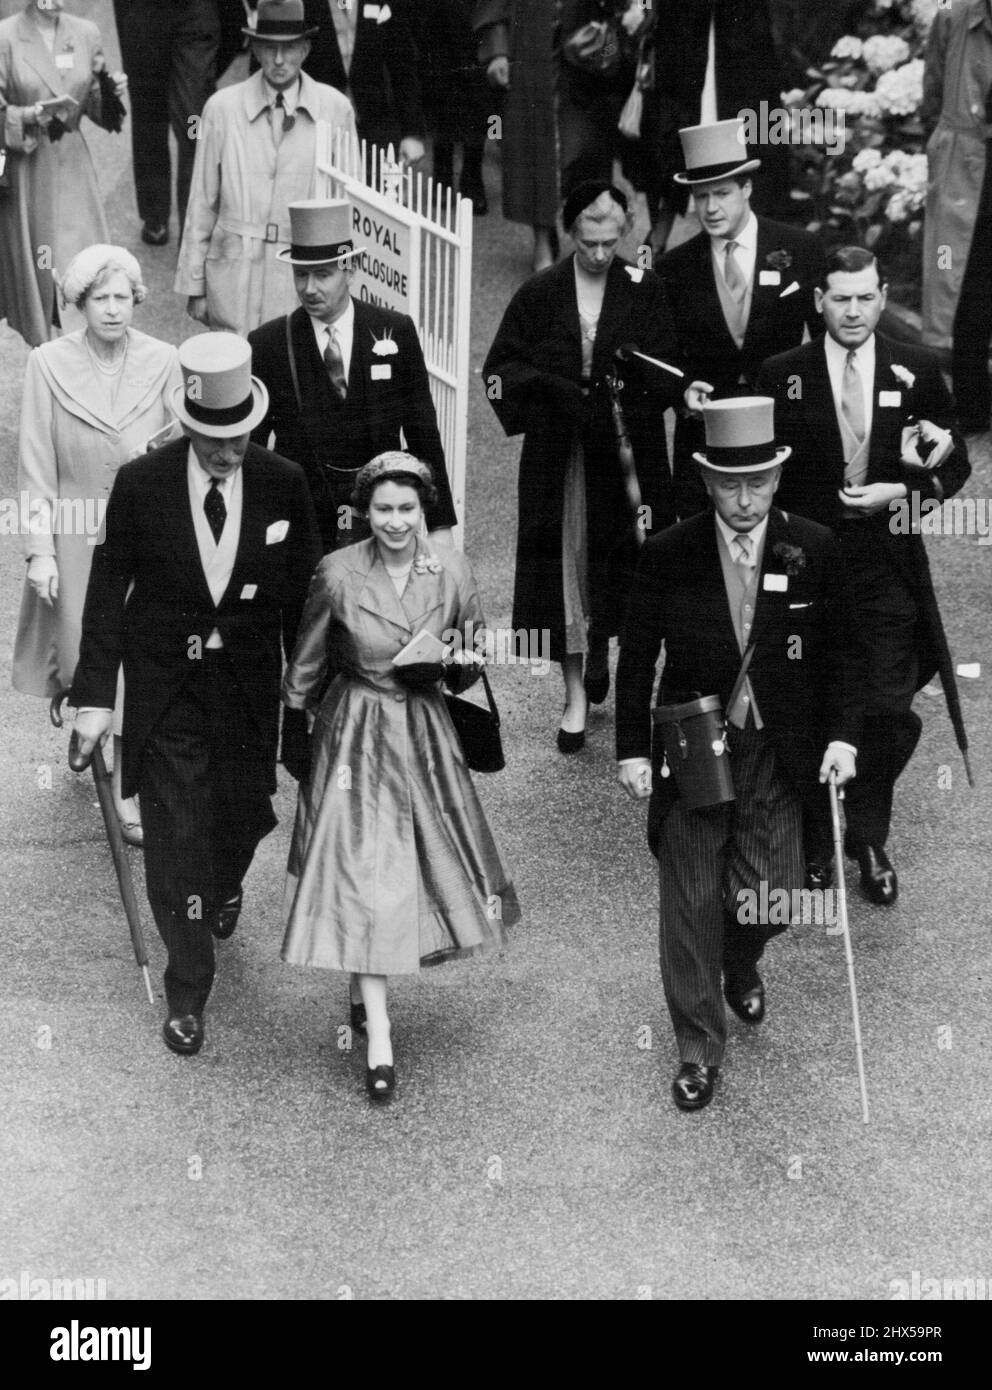 La Reine remporte la coupe de chasse à Ascot -- la Reine souriante qui marche jusqu'à l'enceinte de UnSaddling après que son cheval ait gagné la grande course de la journée à Ascot. Sur la droite se trouve le duc de Norfolk et derrière la reine on peut voir la princesse royale. Au deuxième jour de la rencontre royale d'Ascot, la grande course de la journée, la coupe Royale de chasse, a été gagnée pour sa Majesté la Reine par son cheval 'Choirboy', monté par D. Smith. 17 juin 1953. (Photo de Fox photos). Banque D'Images